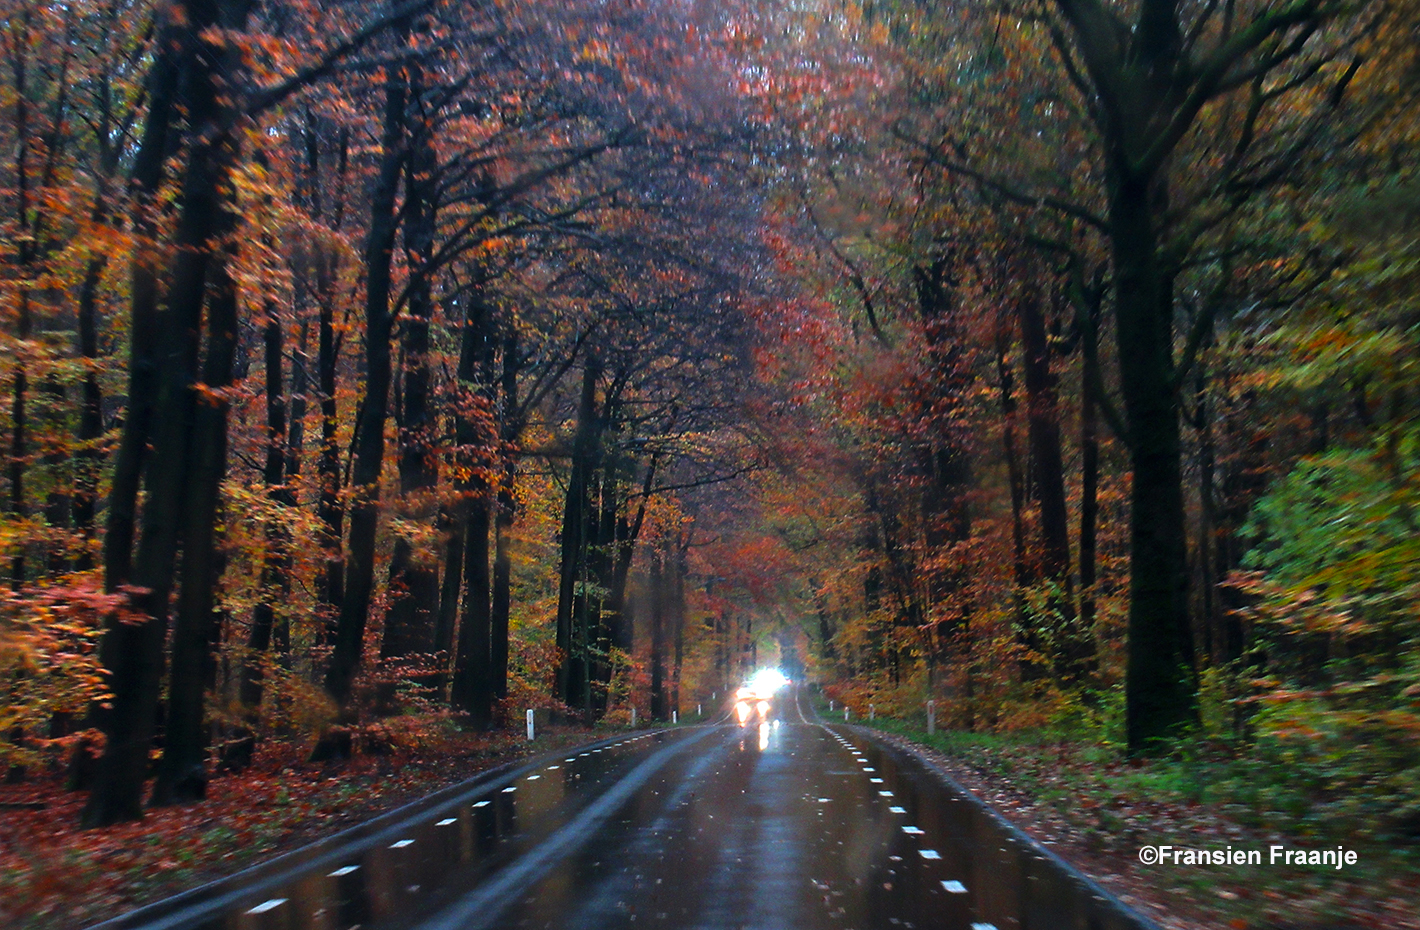 Onderweg in de auto rijden we door een kleurrijke tunnel van herfstkleuren - Foto: ©Fransien Fraanje.